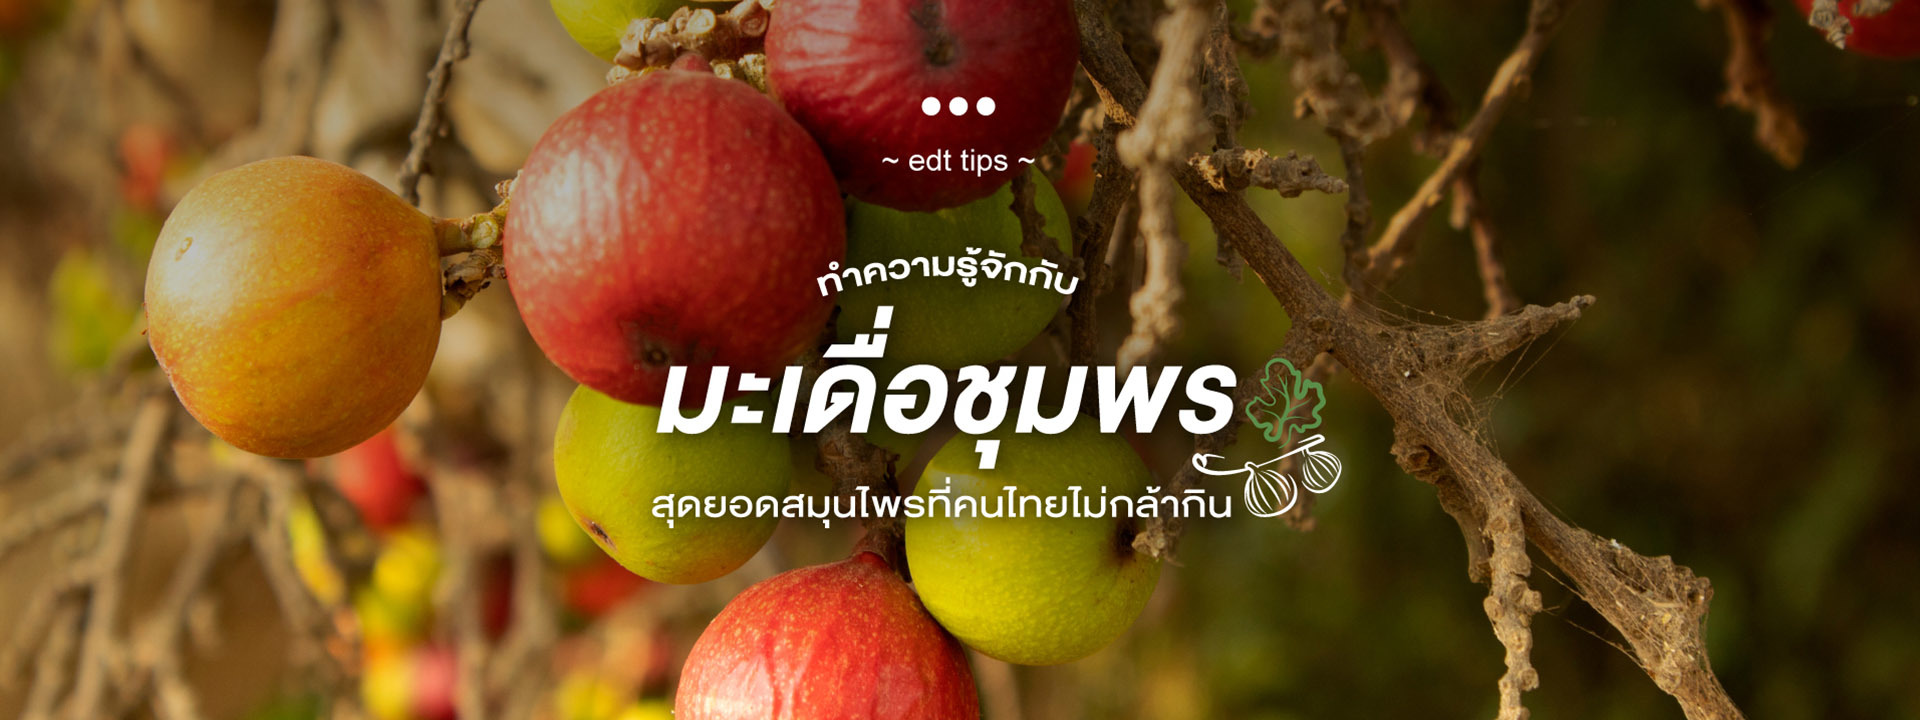 มาทำความรู้จักกับ “มะเดื่อชุมพร” สุดยอดสมุนไพรที่คนไทยไม่กล้ากิน